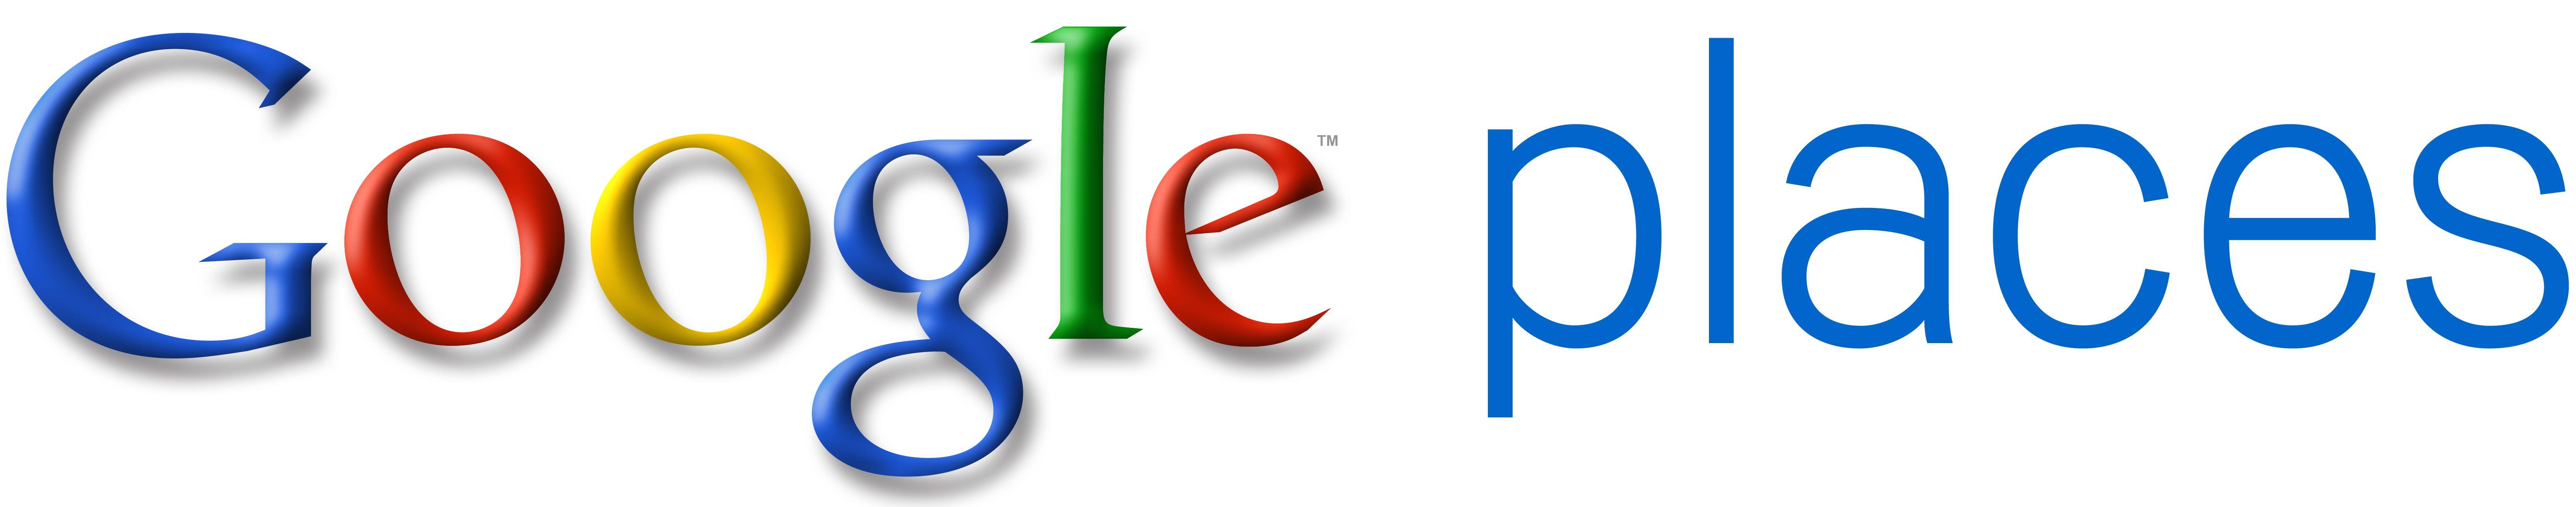 Google Places Logo - Google Places